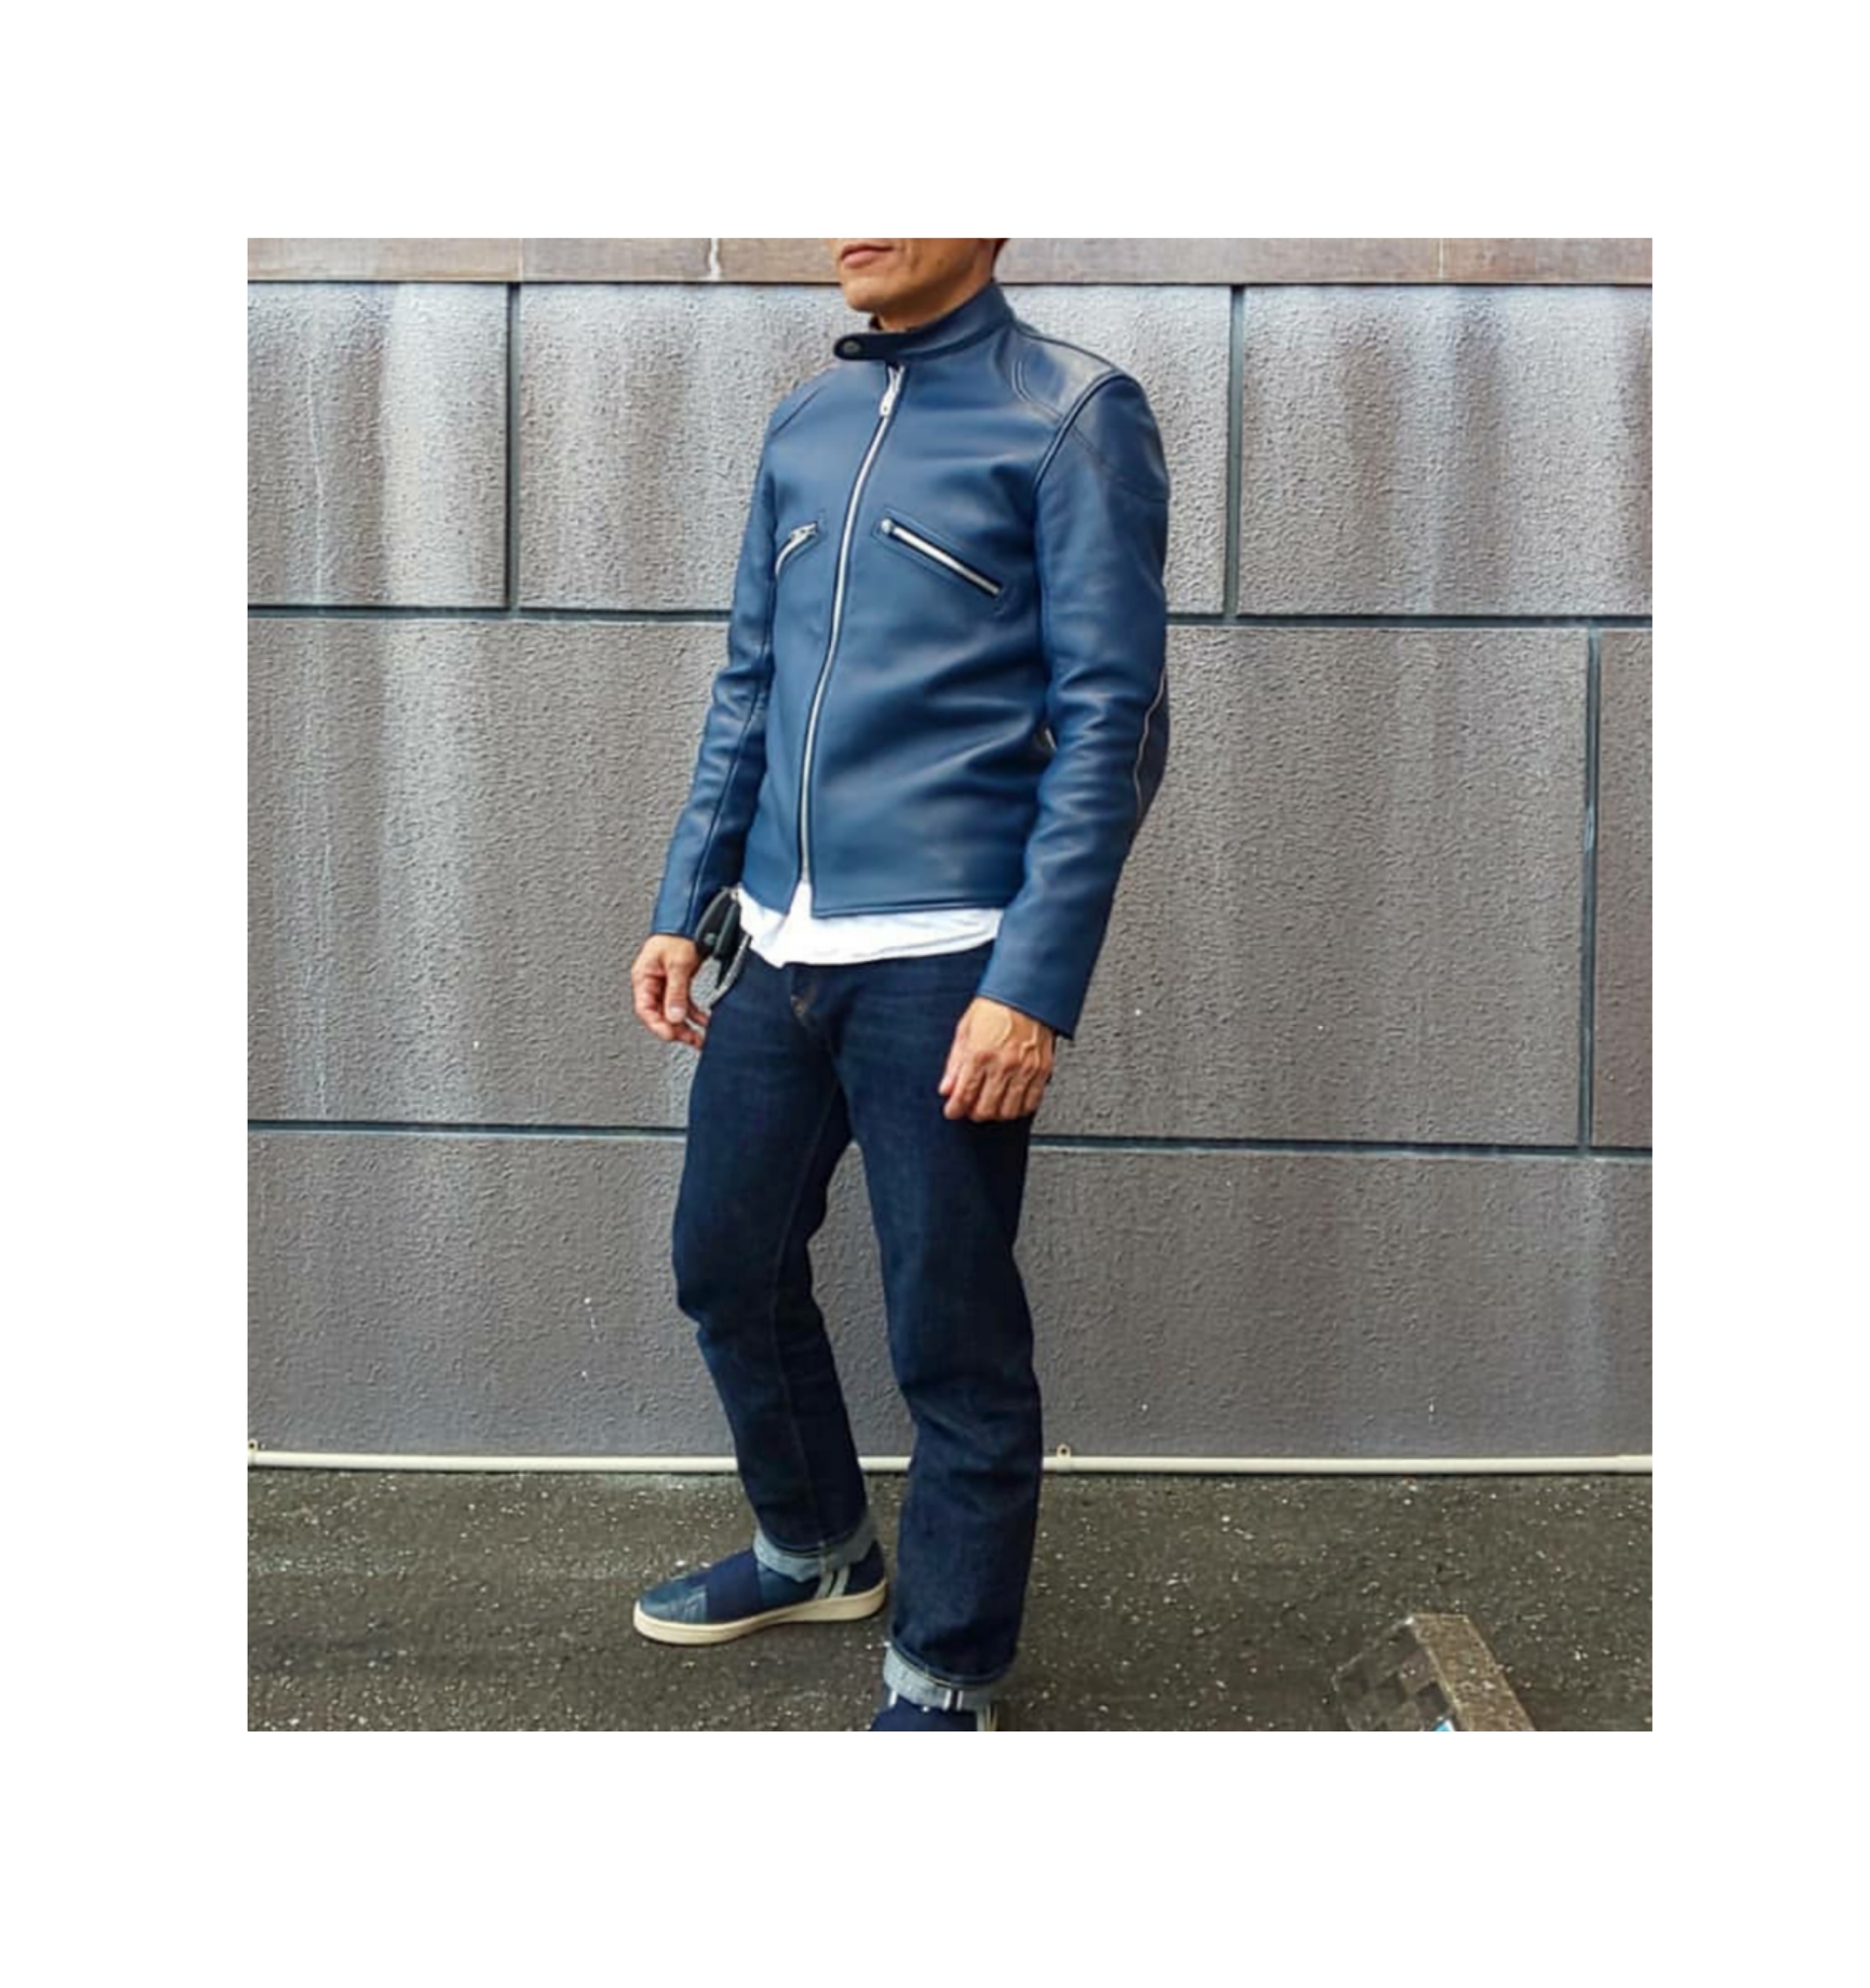 ADDICT CLOTHES JAPAN 革ジャン ライダースジャケット – クロス 